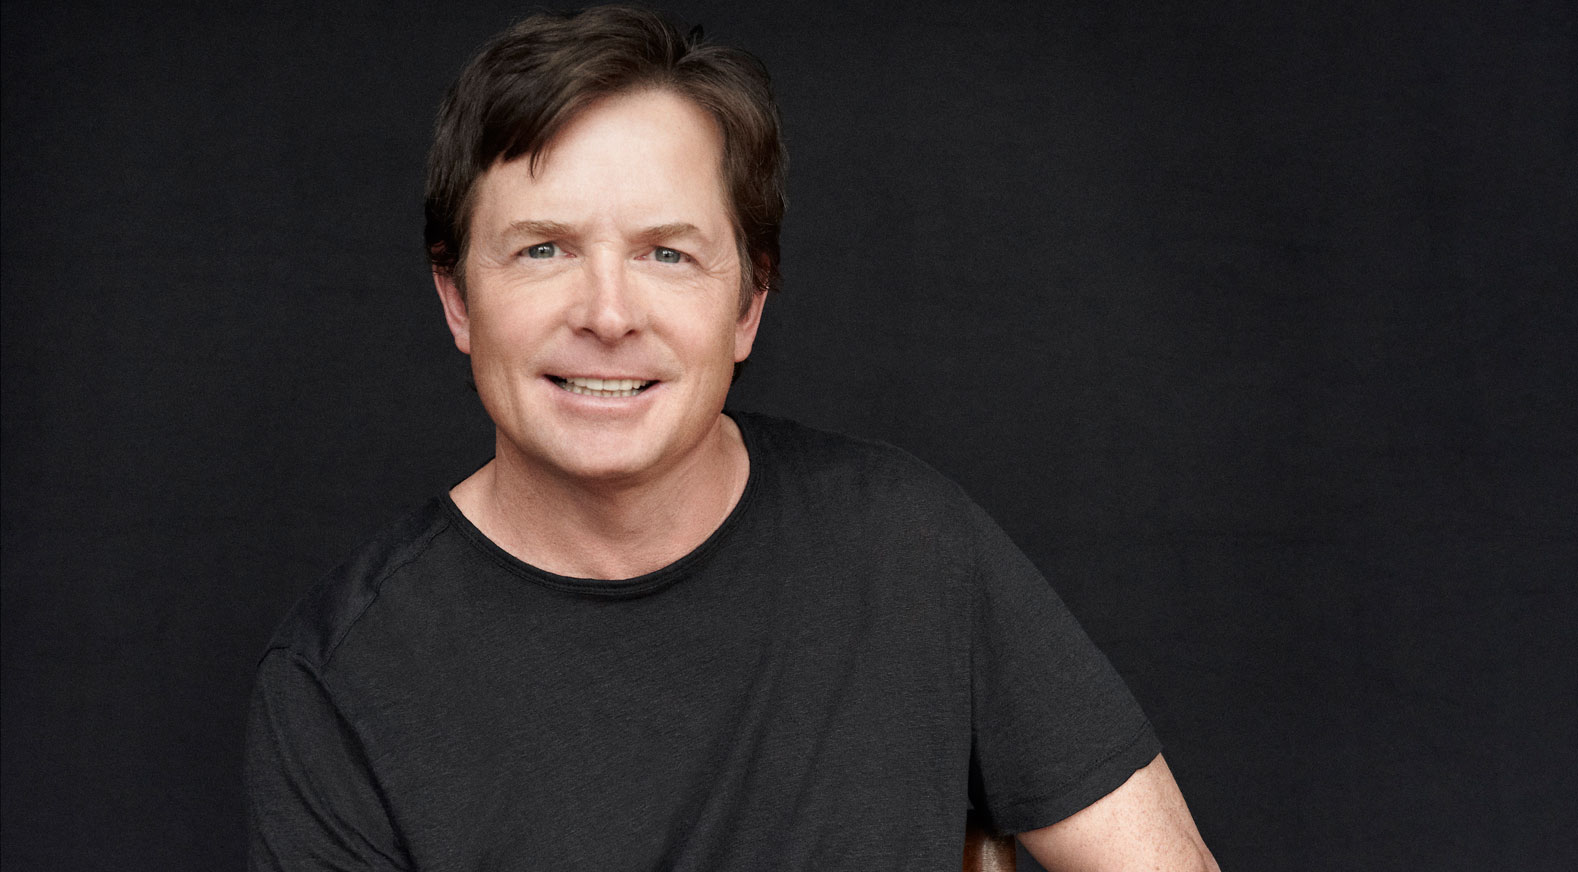 Michael J. Fox parla del Parkinson, malattia che lo affligge da più di 20 anni